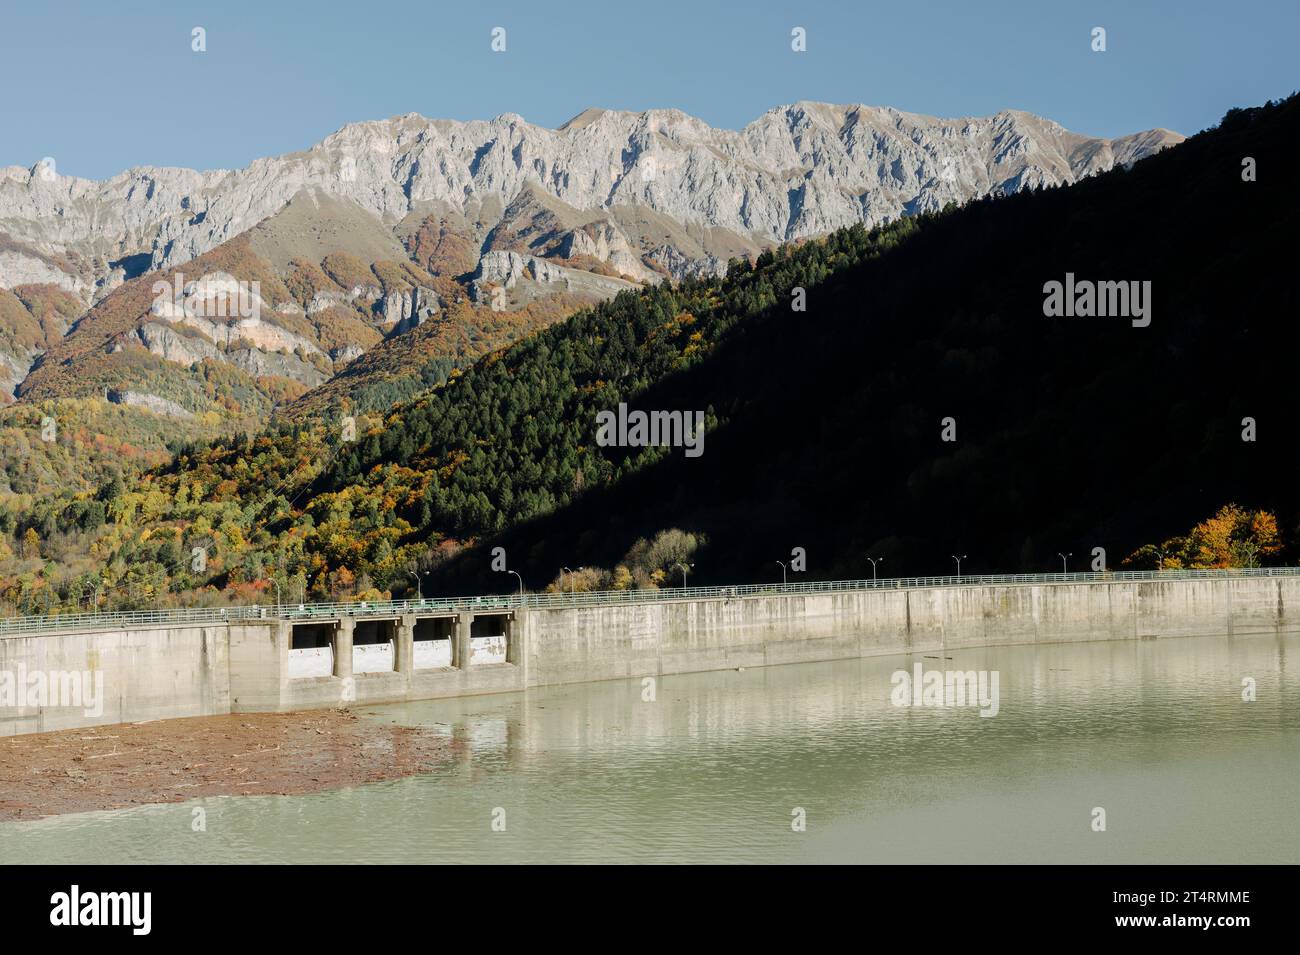 Barrage d'Entraque et Lago della Piastra (Alpes Maritimes, Cuneo, Piémont, Italie). Panorama du barrage en automne Banque D'Images